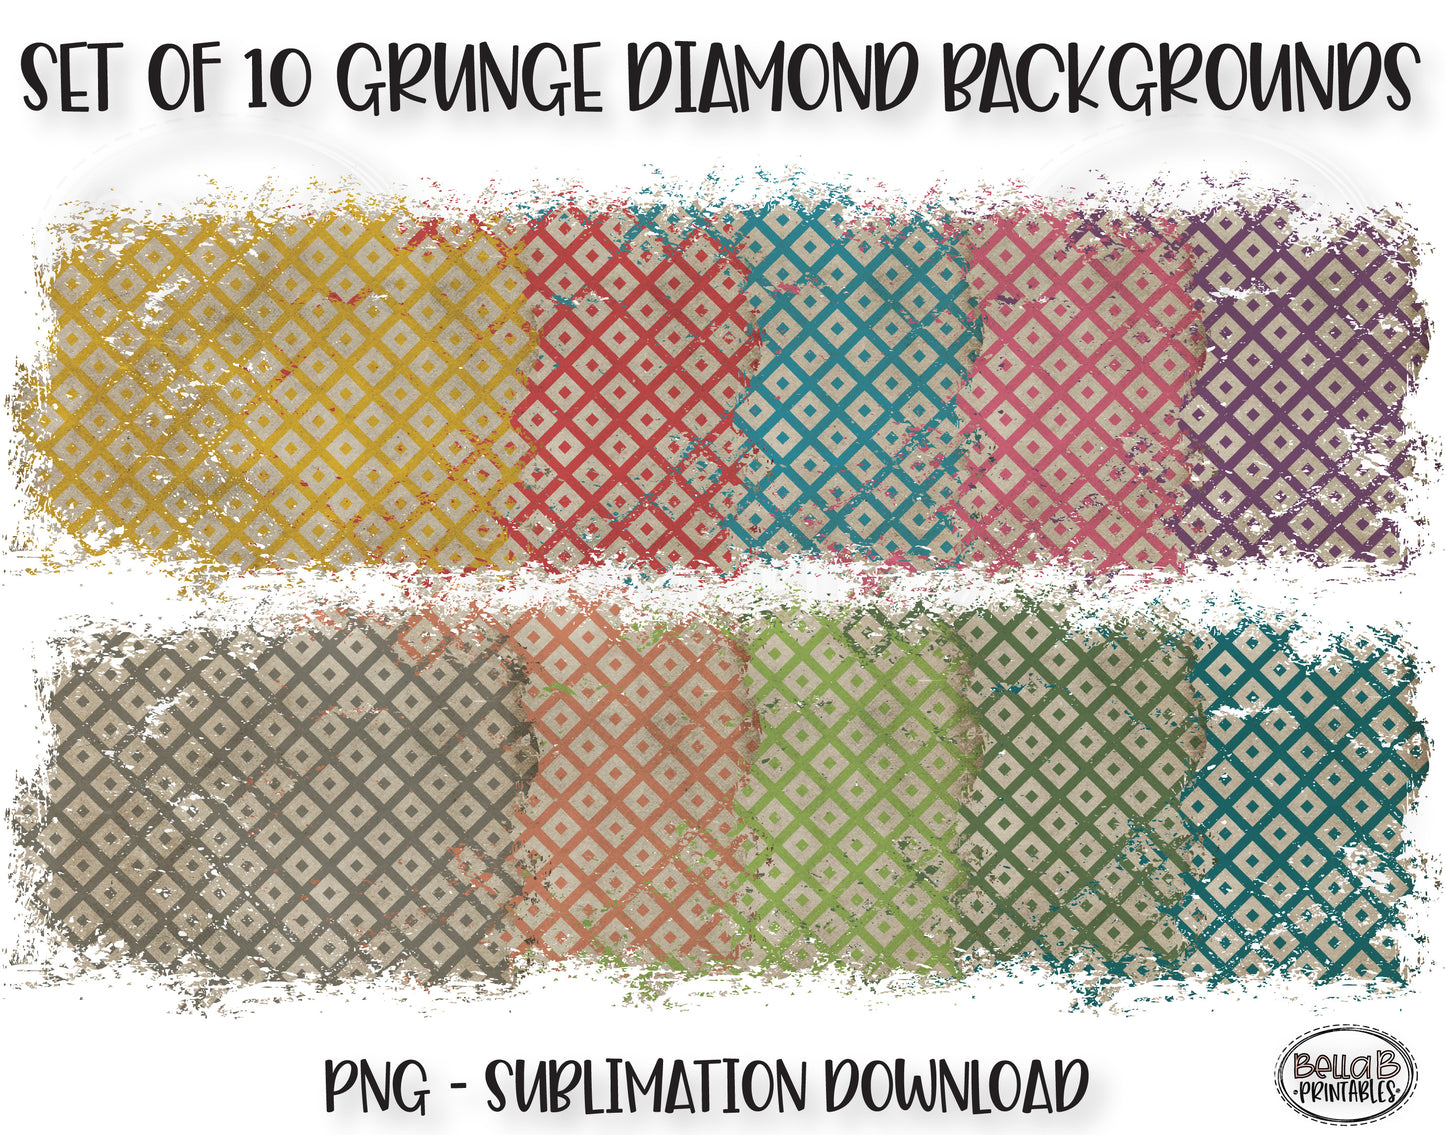 Dirty Grunge Diamond Sublimation Background Bundle, Backsplash